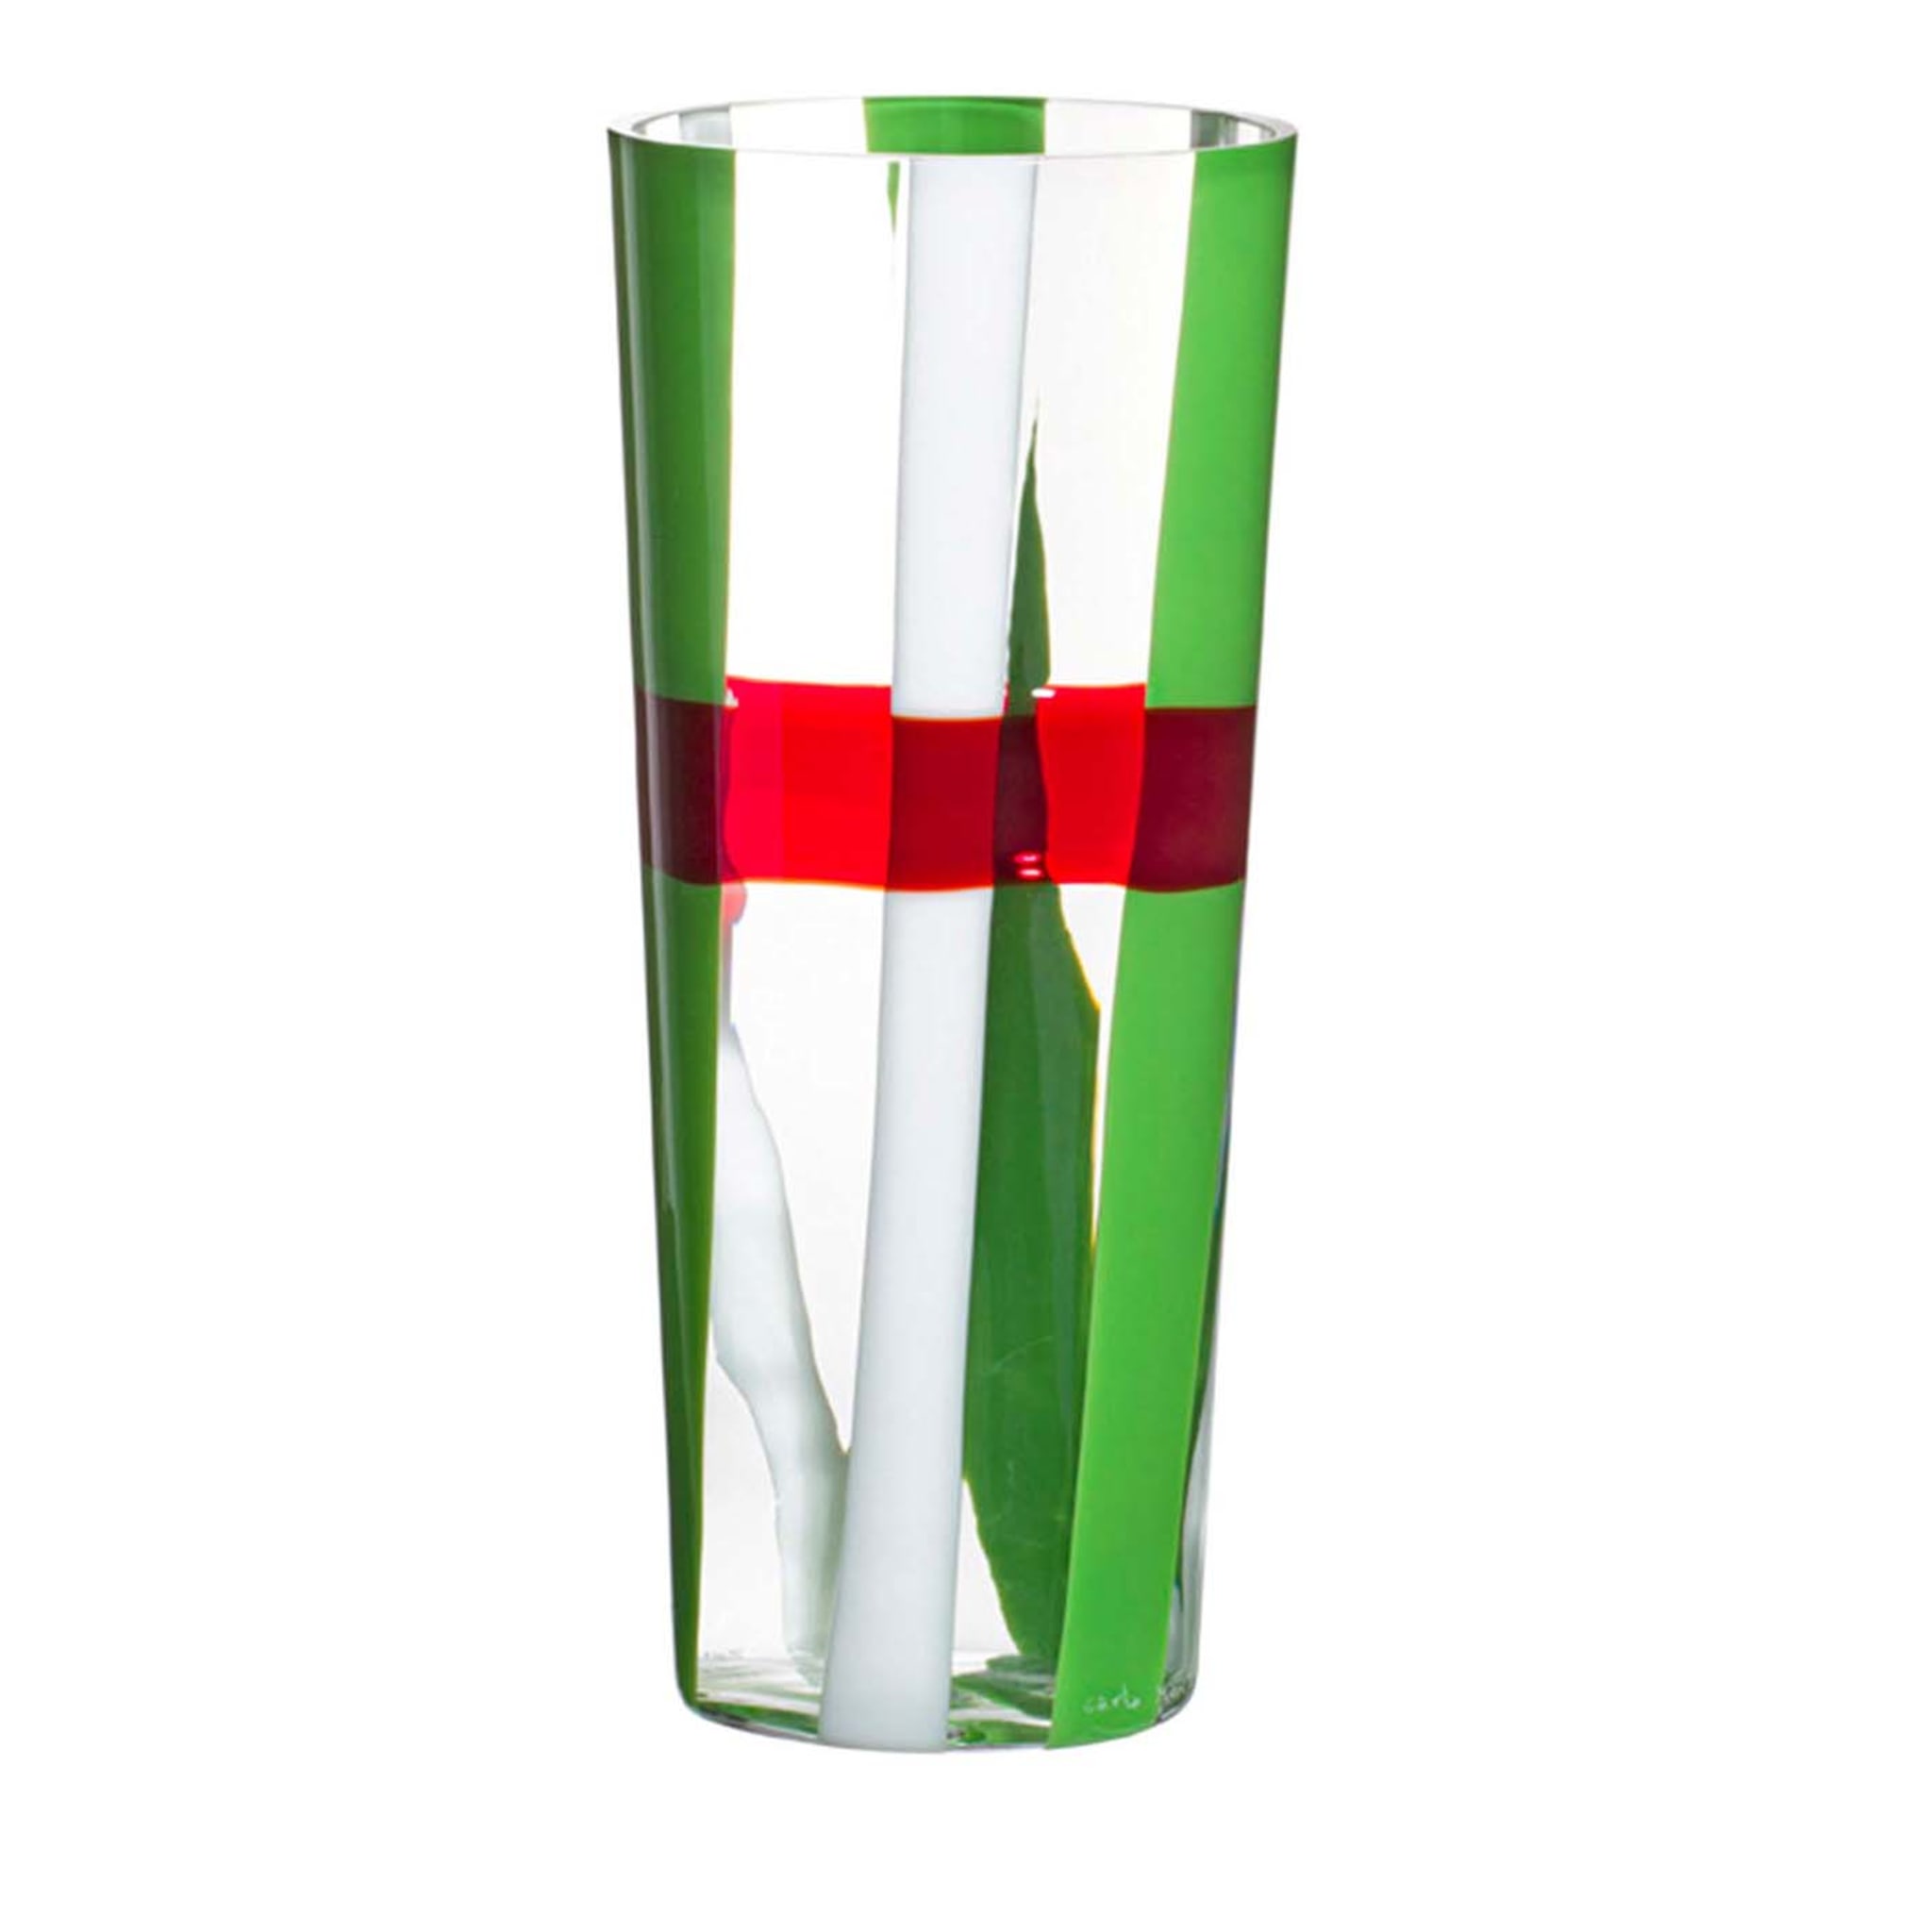 Troncocono Grün/Weiß/Rot gestreift Vase von Carlo Moretti - Hauptansicht